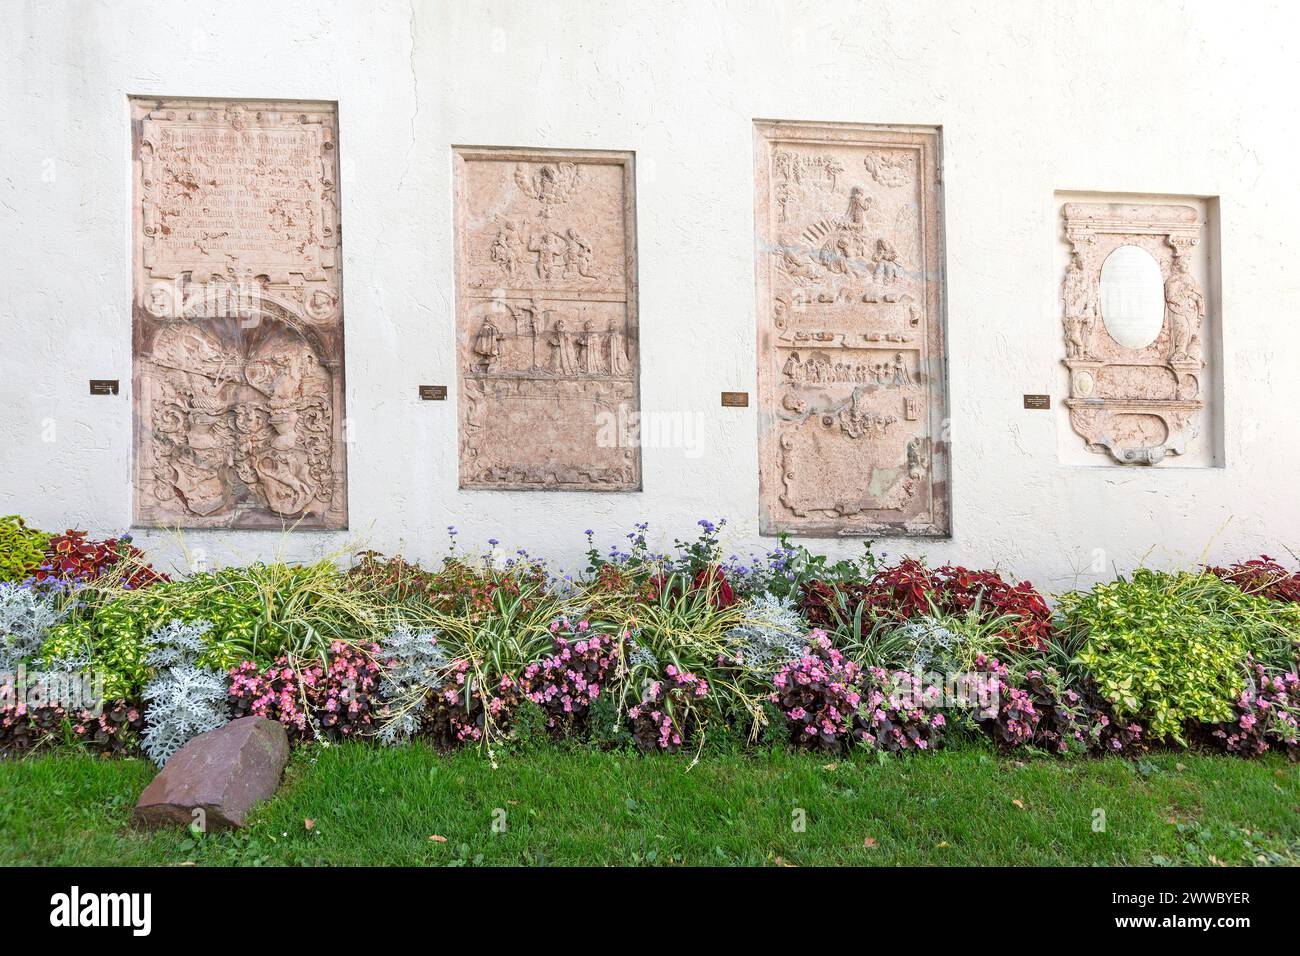 Lapidarium, Heraldic Tombstones In Wels Castle Garden, Wels City, Upper Austria, Austria Stock Photo